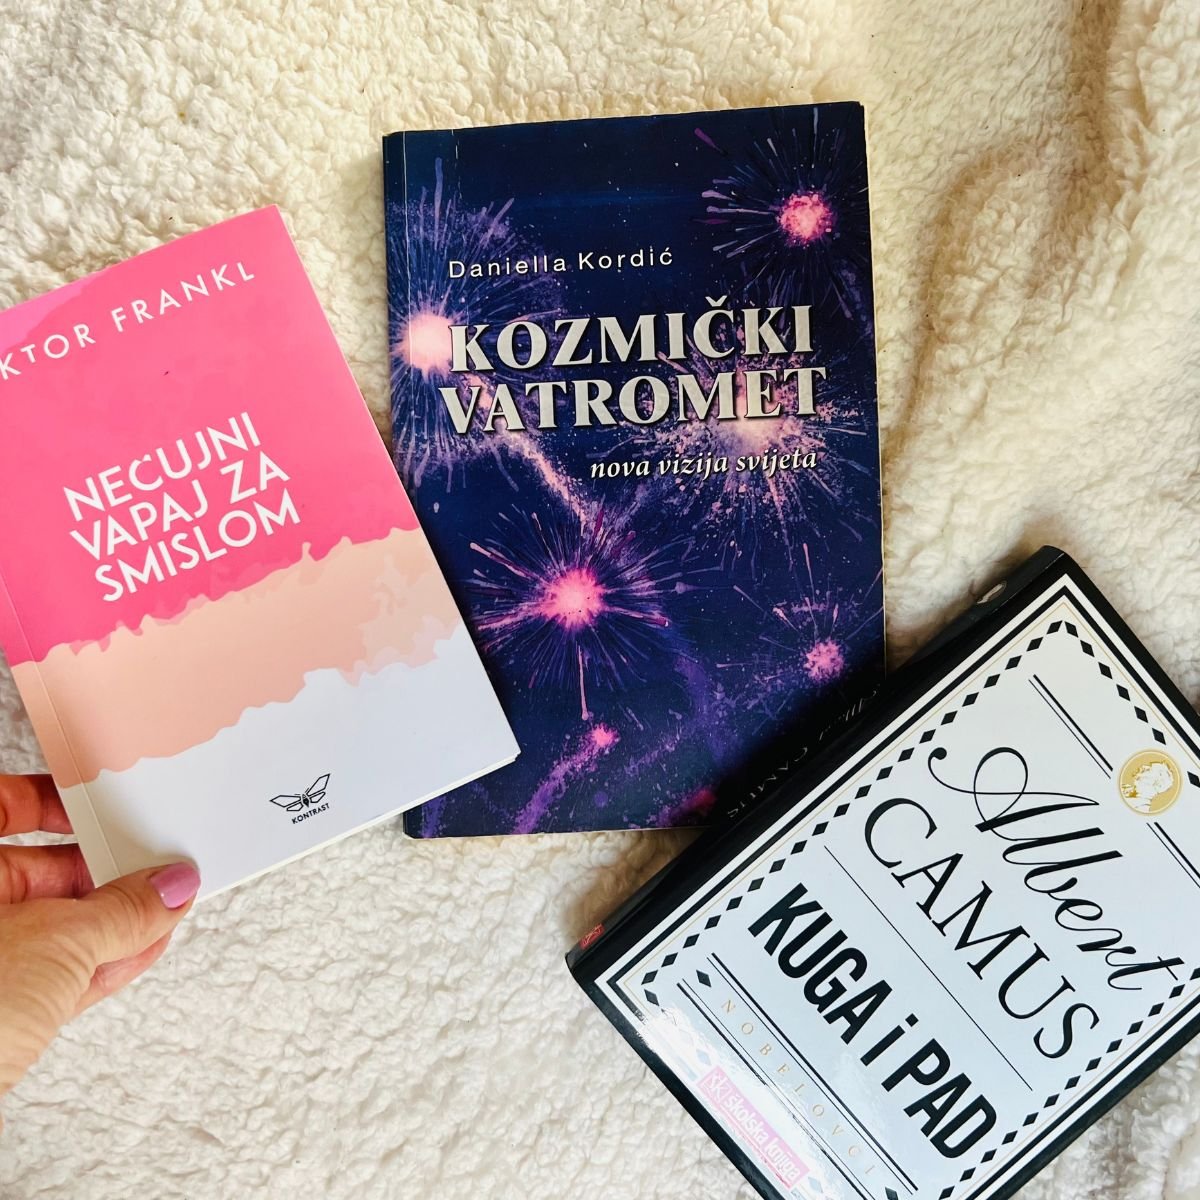 Tri knjige koje mijenjaju svijest / foto: Alis Marić